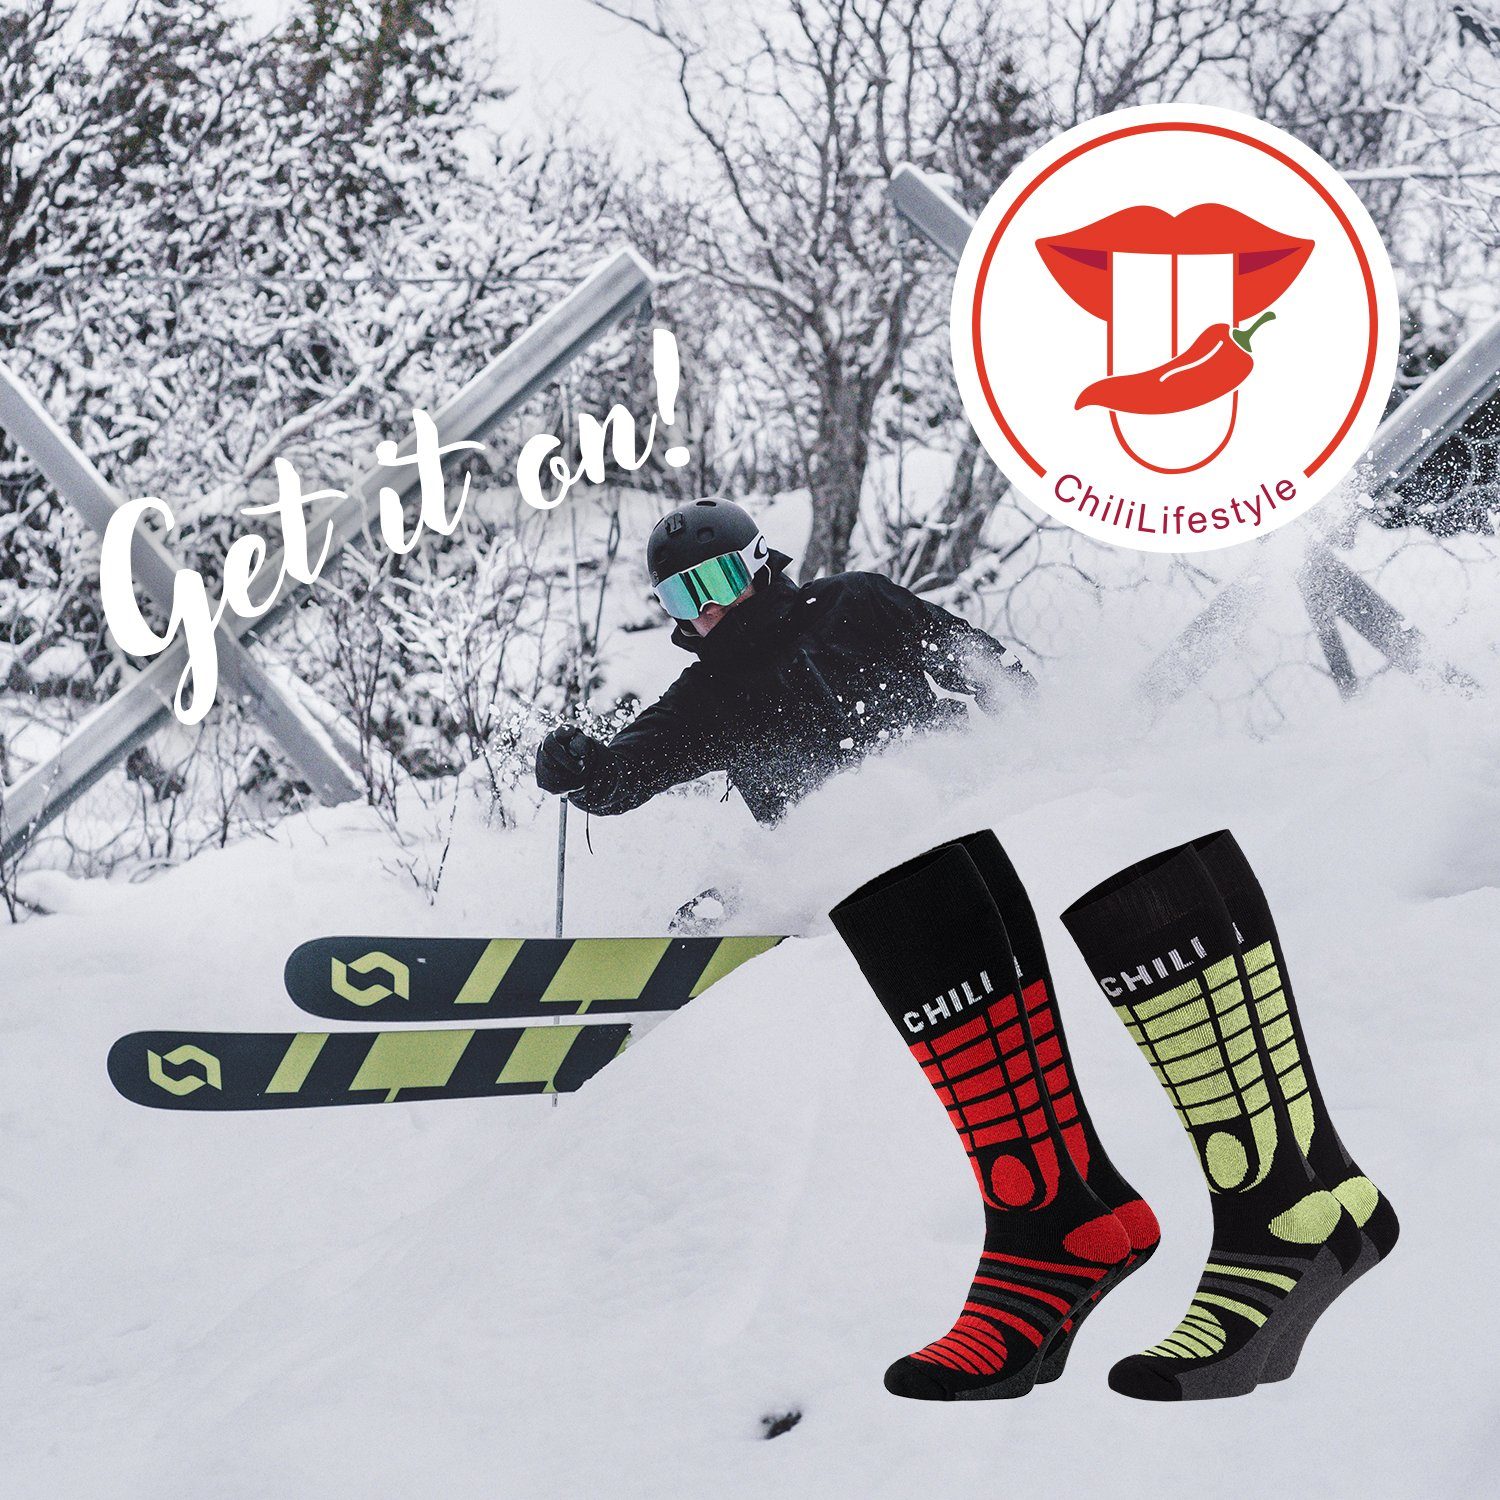 Chili Lifestyle Ski Knie Strümpfe Socken Yeon/Red 4 Winter Paar